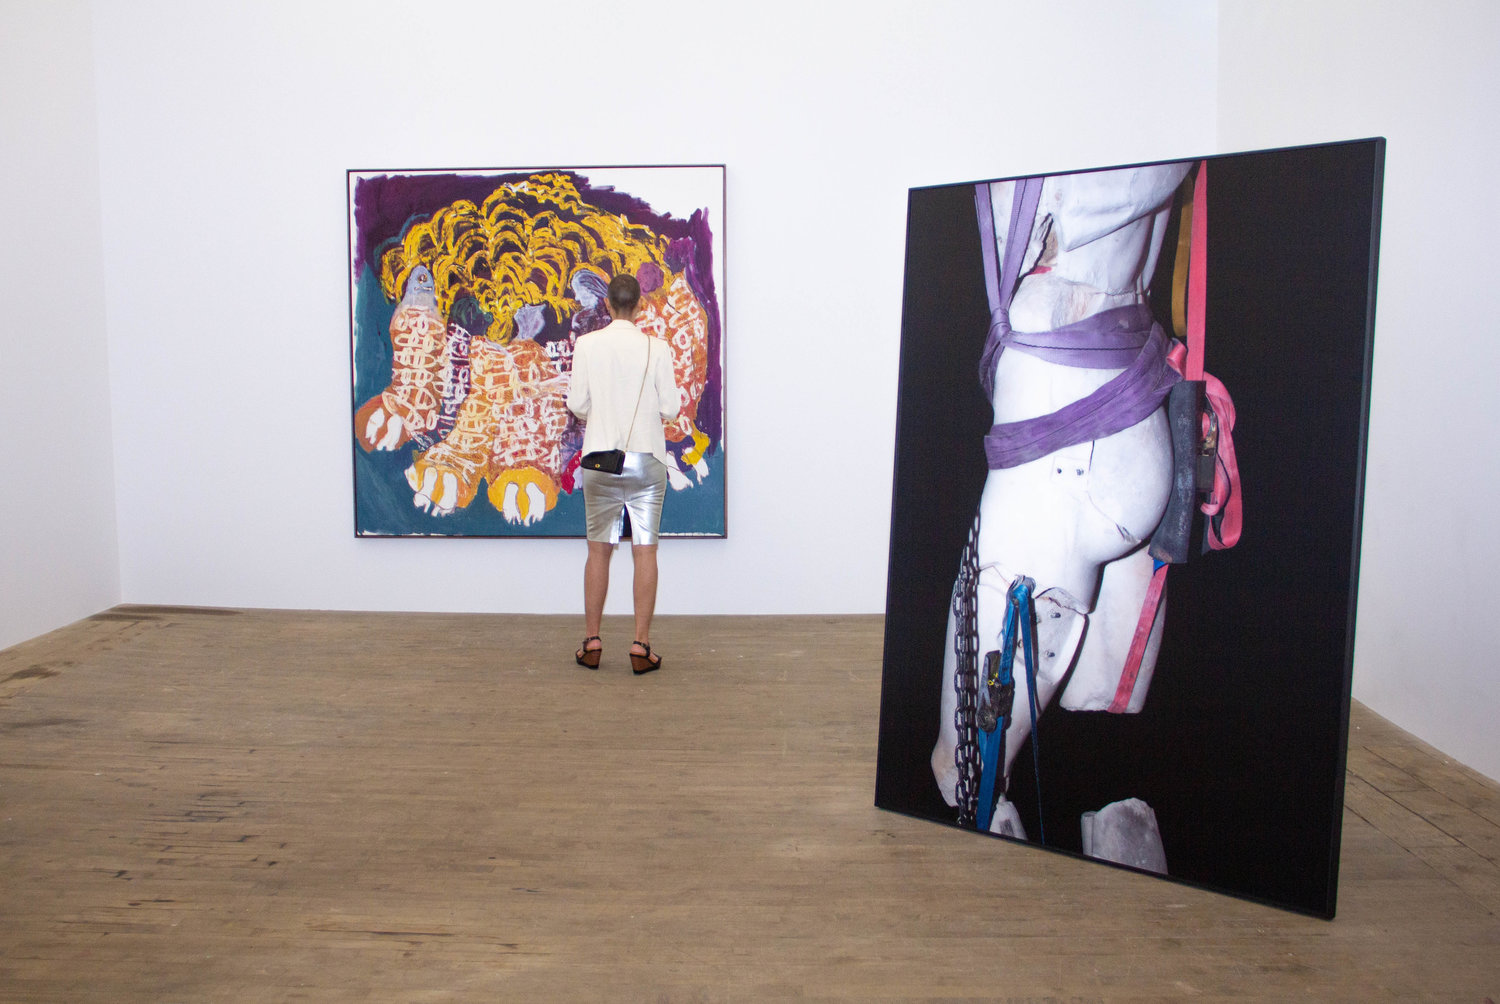 Moshekwa Langa, Viviane Sassen, and Portia Zvavahera at Andrew Kreps  Gallery – Art Viewer